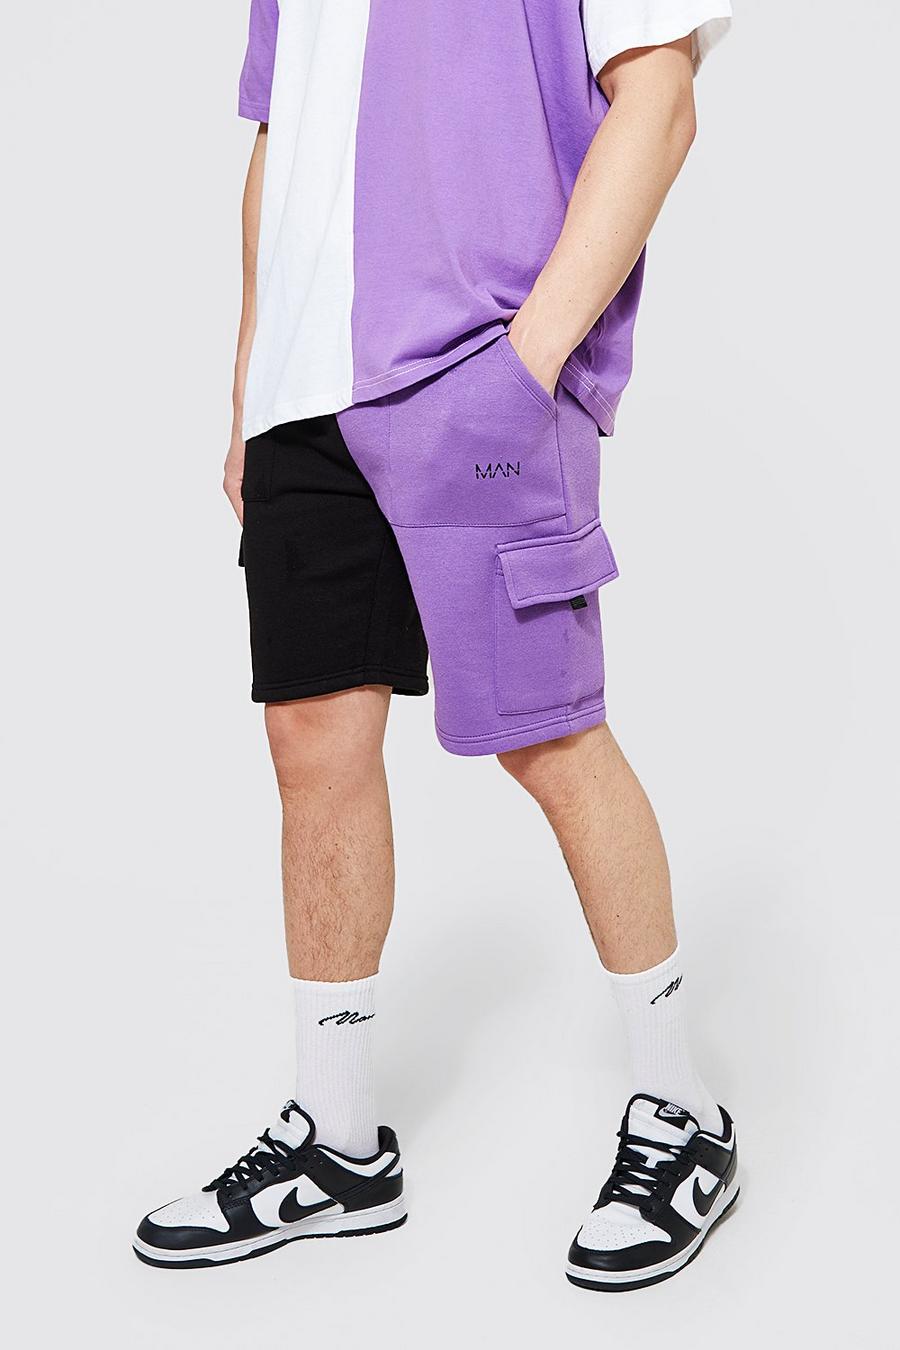 Lockere gespleißte Man Cargo Jersey-Shorts, Purple violet